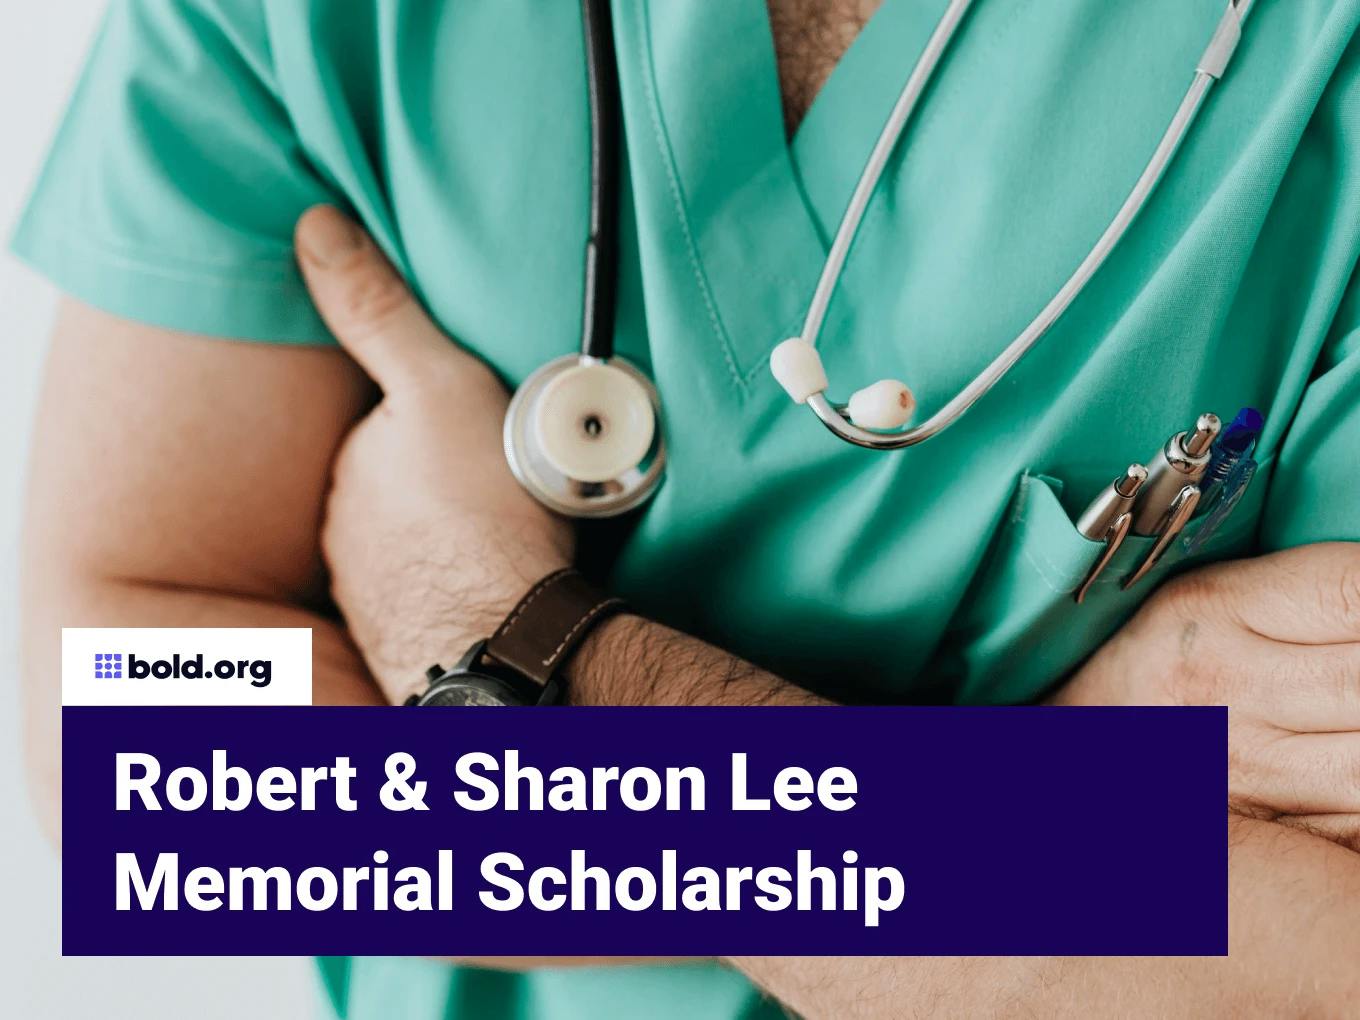 Robert & Sharon Lee Memorial Scholarship